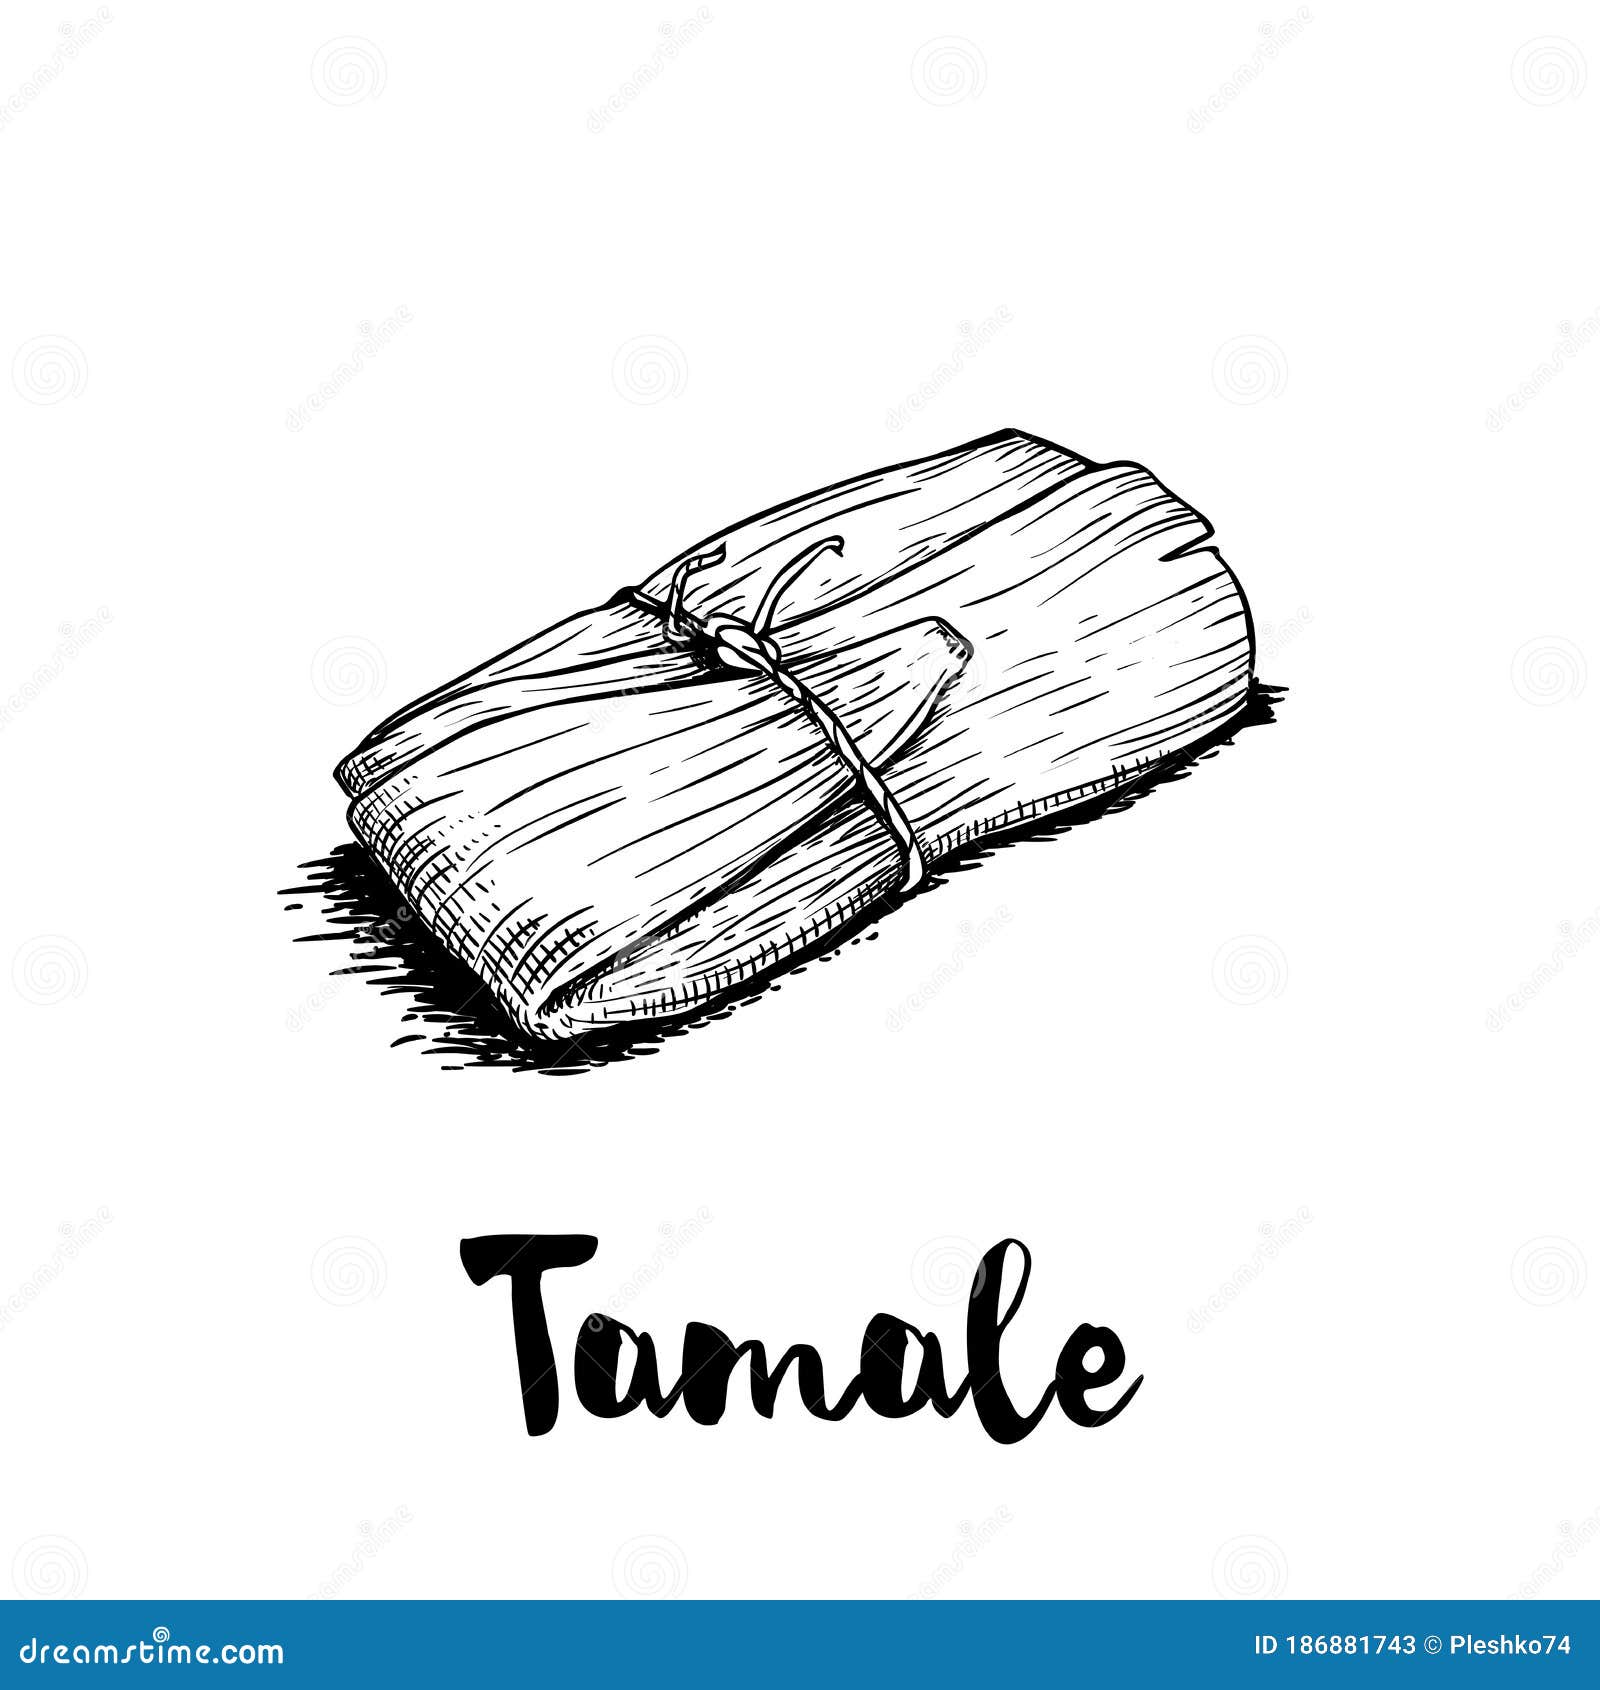 Tamale Ilustraciones Stock, Vectores, Y Clipart – (80 Ilustraciones Stock)